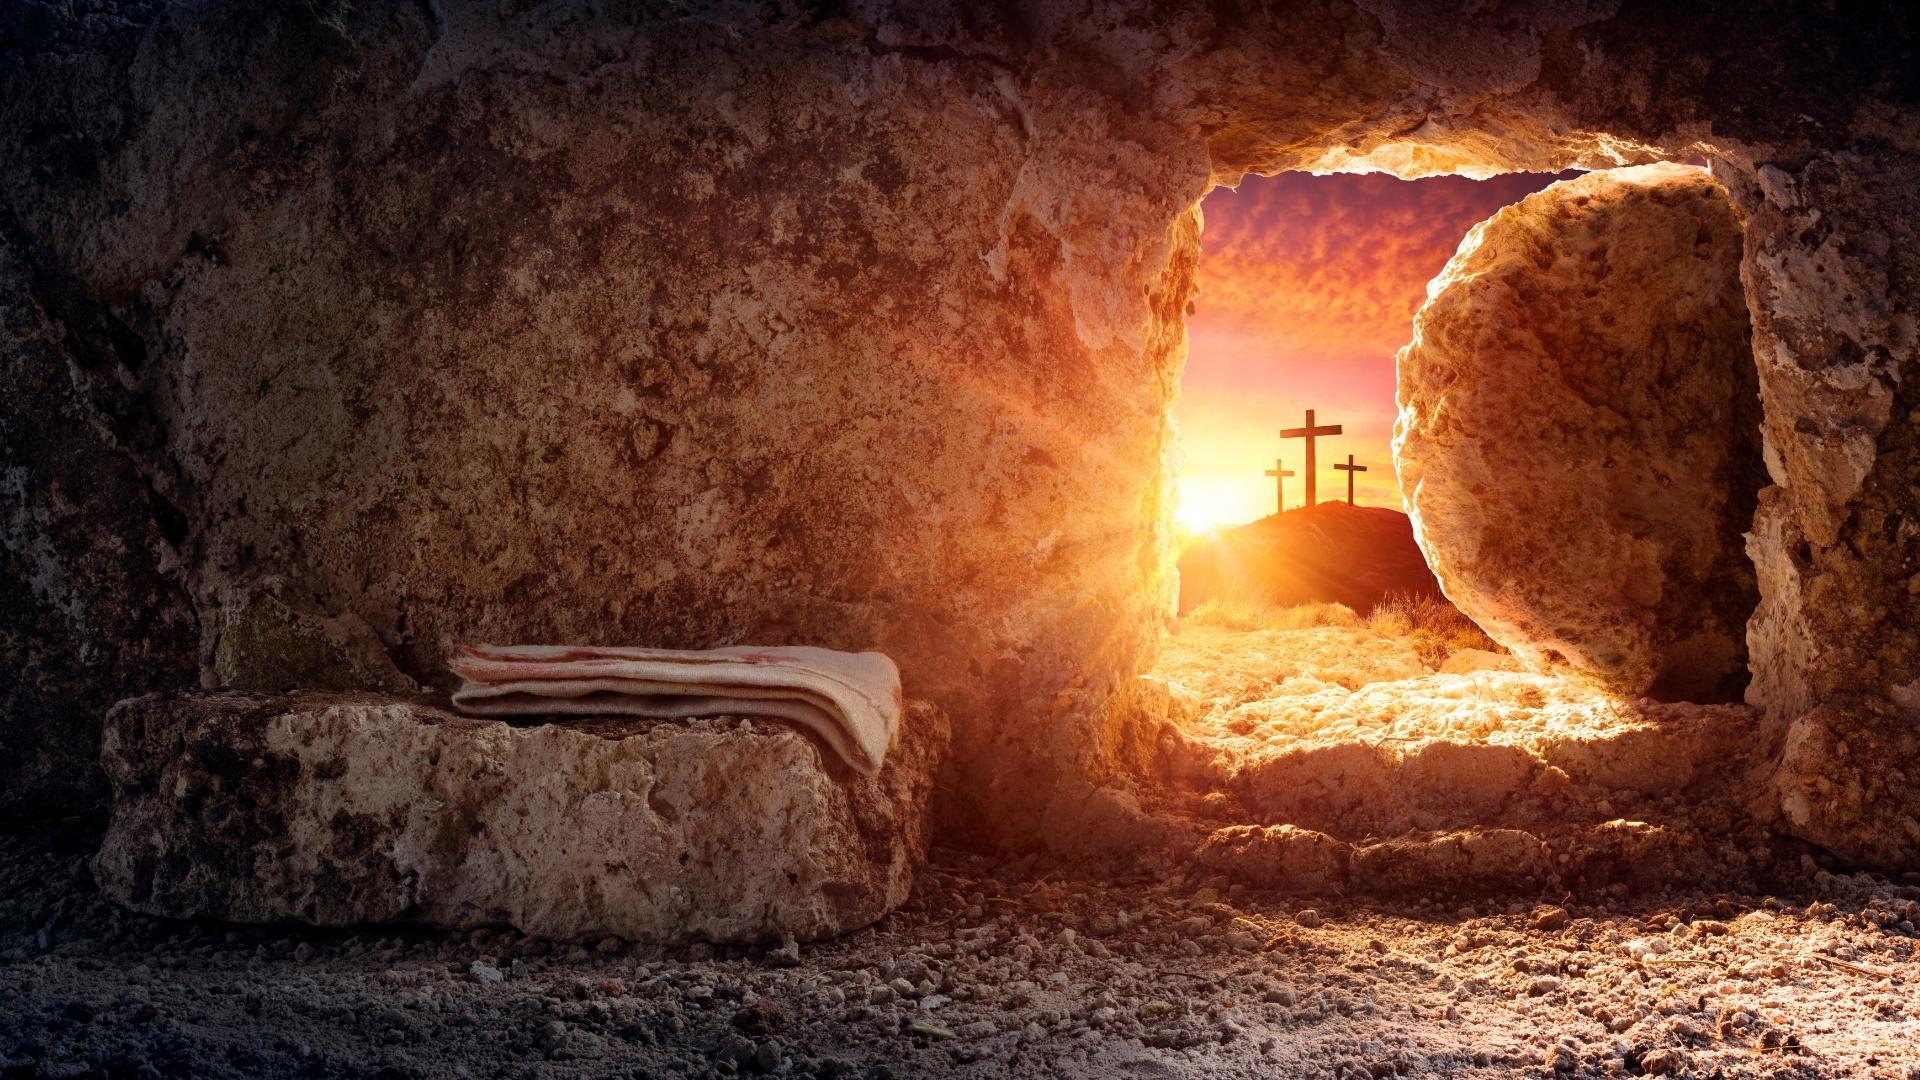 Comment la résurrection de Jésus nous aide-t-elle au quotidien